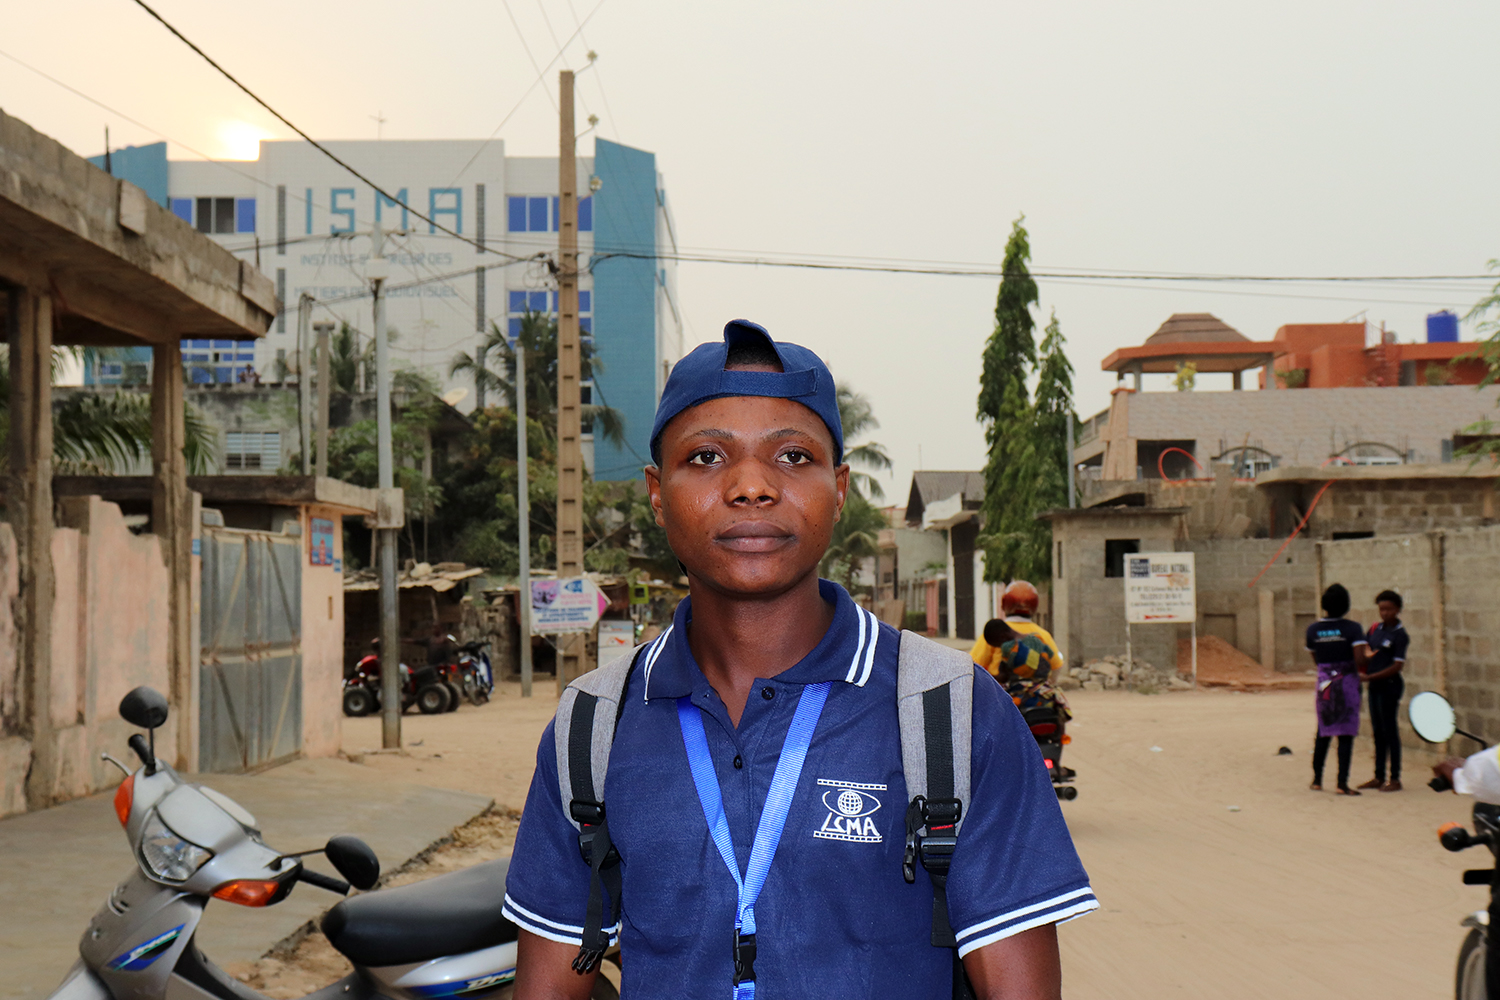 Denis ZANU est étudiant de première année de journalisme. Il utilise les réseaux sociaux pour être connecté avec le monde